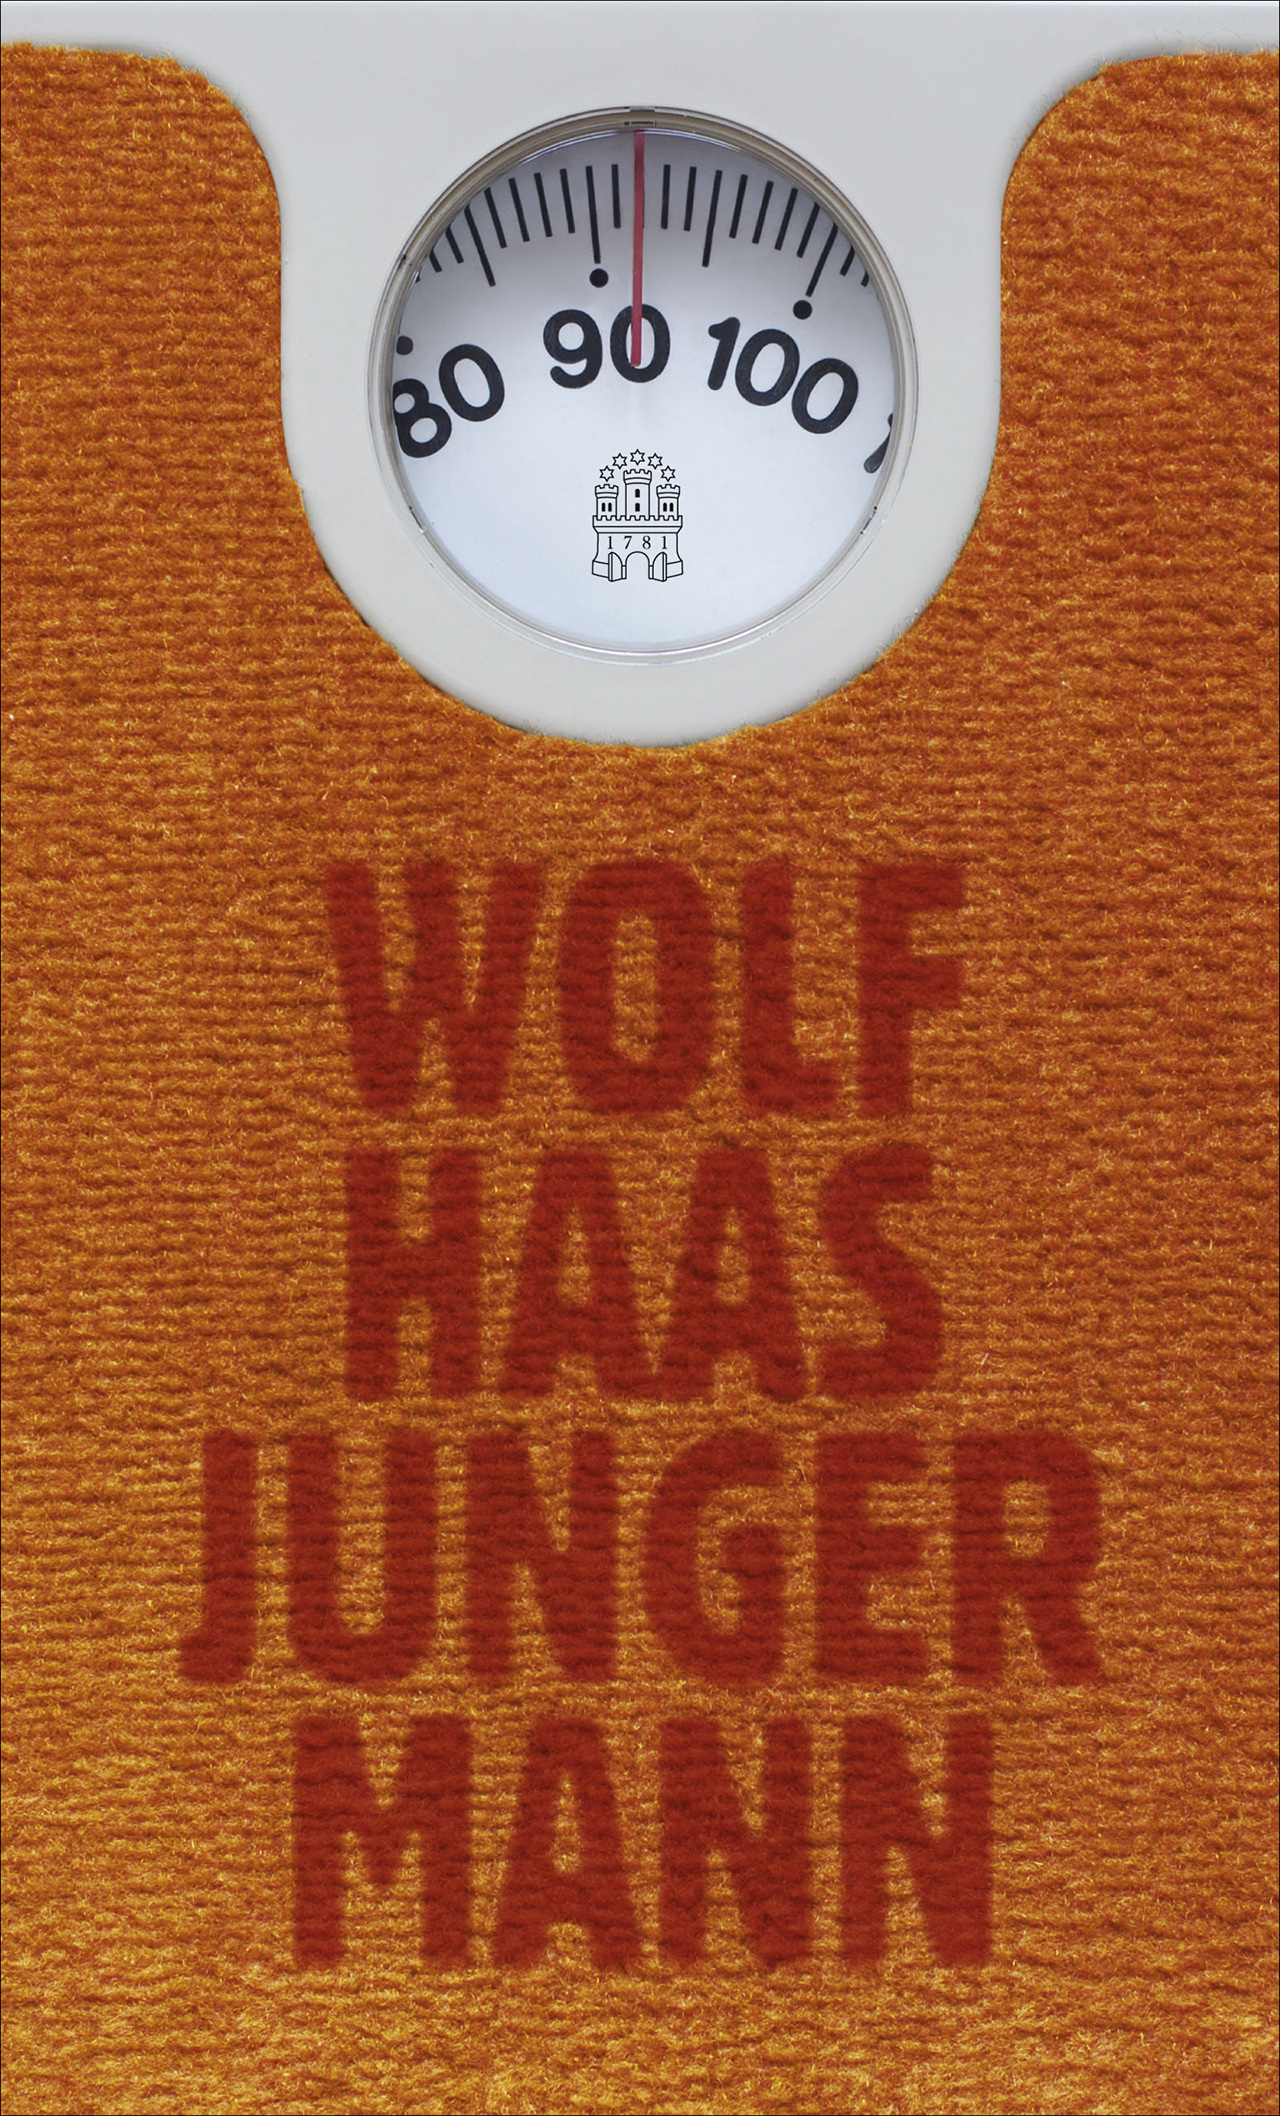 Wolf Haas